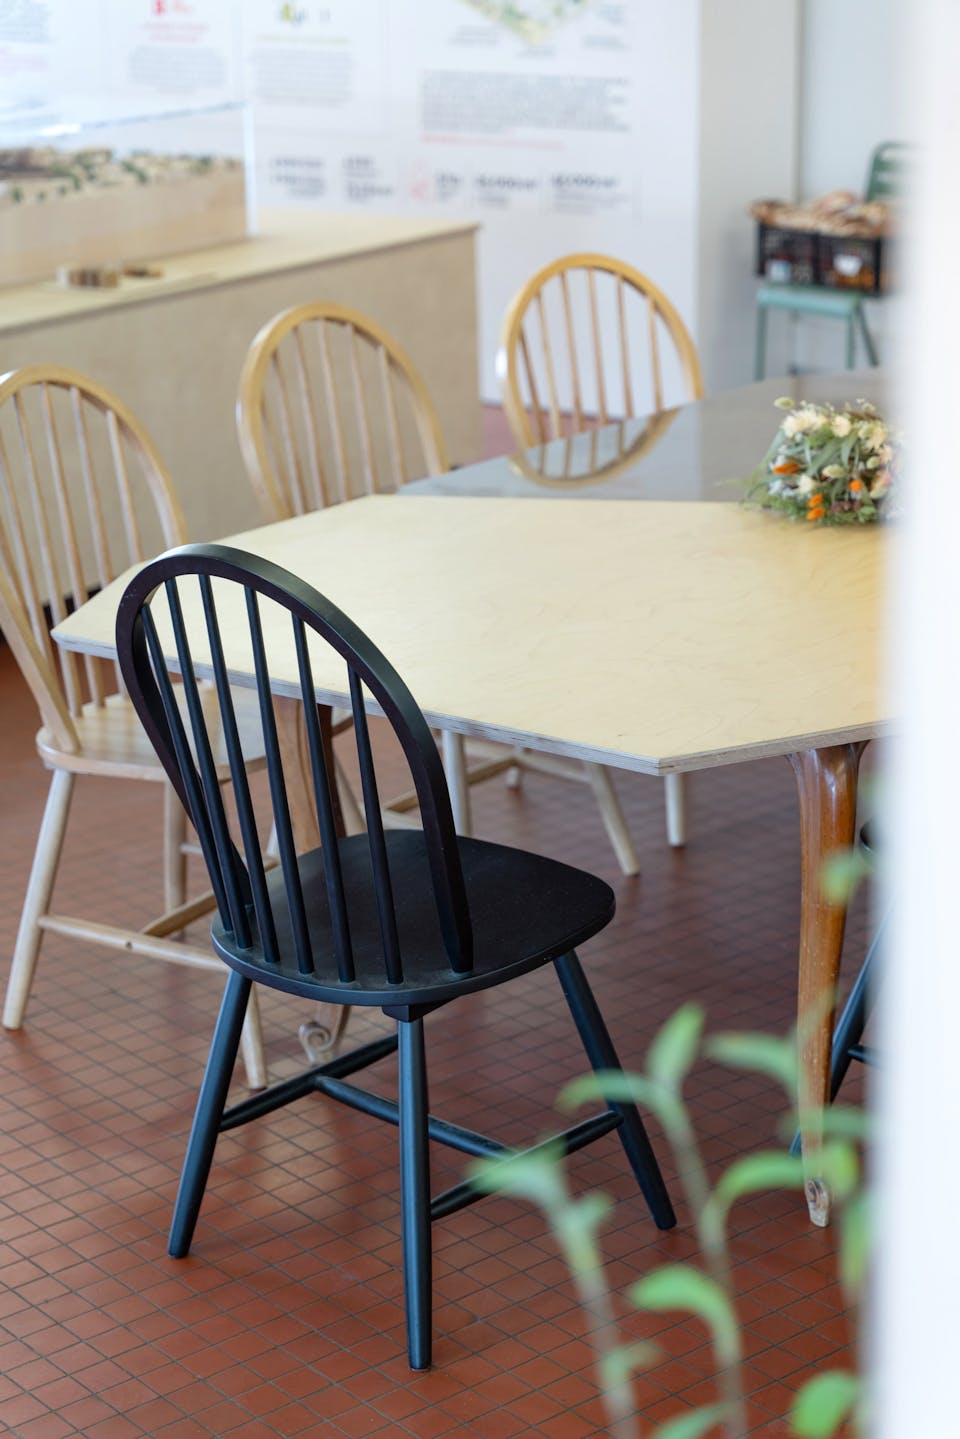 Tables et chaises en bois conçues par l'agence de design Studio Katra, intégrant la scénographie de Labo Diva.